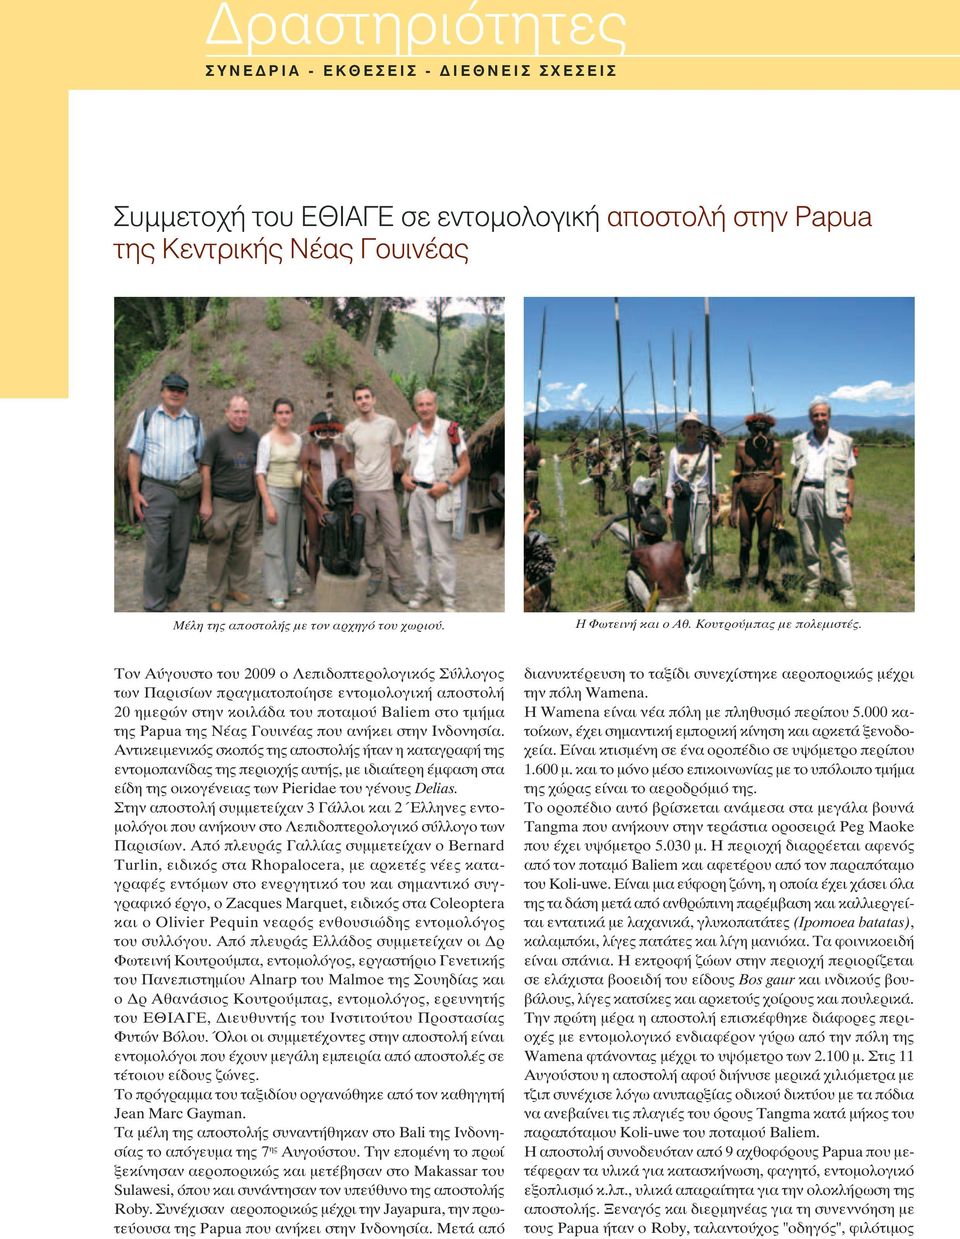 Τον Αύγουστο του 2009 ο Λεπιδοπτερολογικός Σύλλογος των Παρισίων πραγματοποίησε εντομολογική αποστολή 20 ημερών στην κοιλάδα του ποταμού Baliem στο τμήμα της Papua της Νέας Γουινέας που ανήκει στην